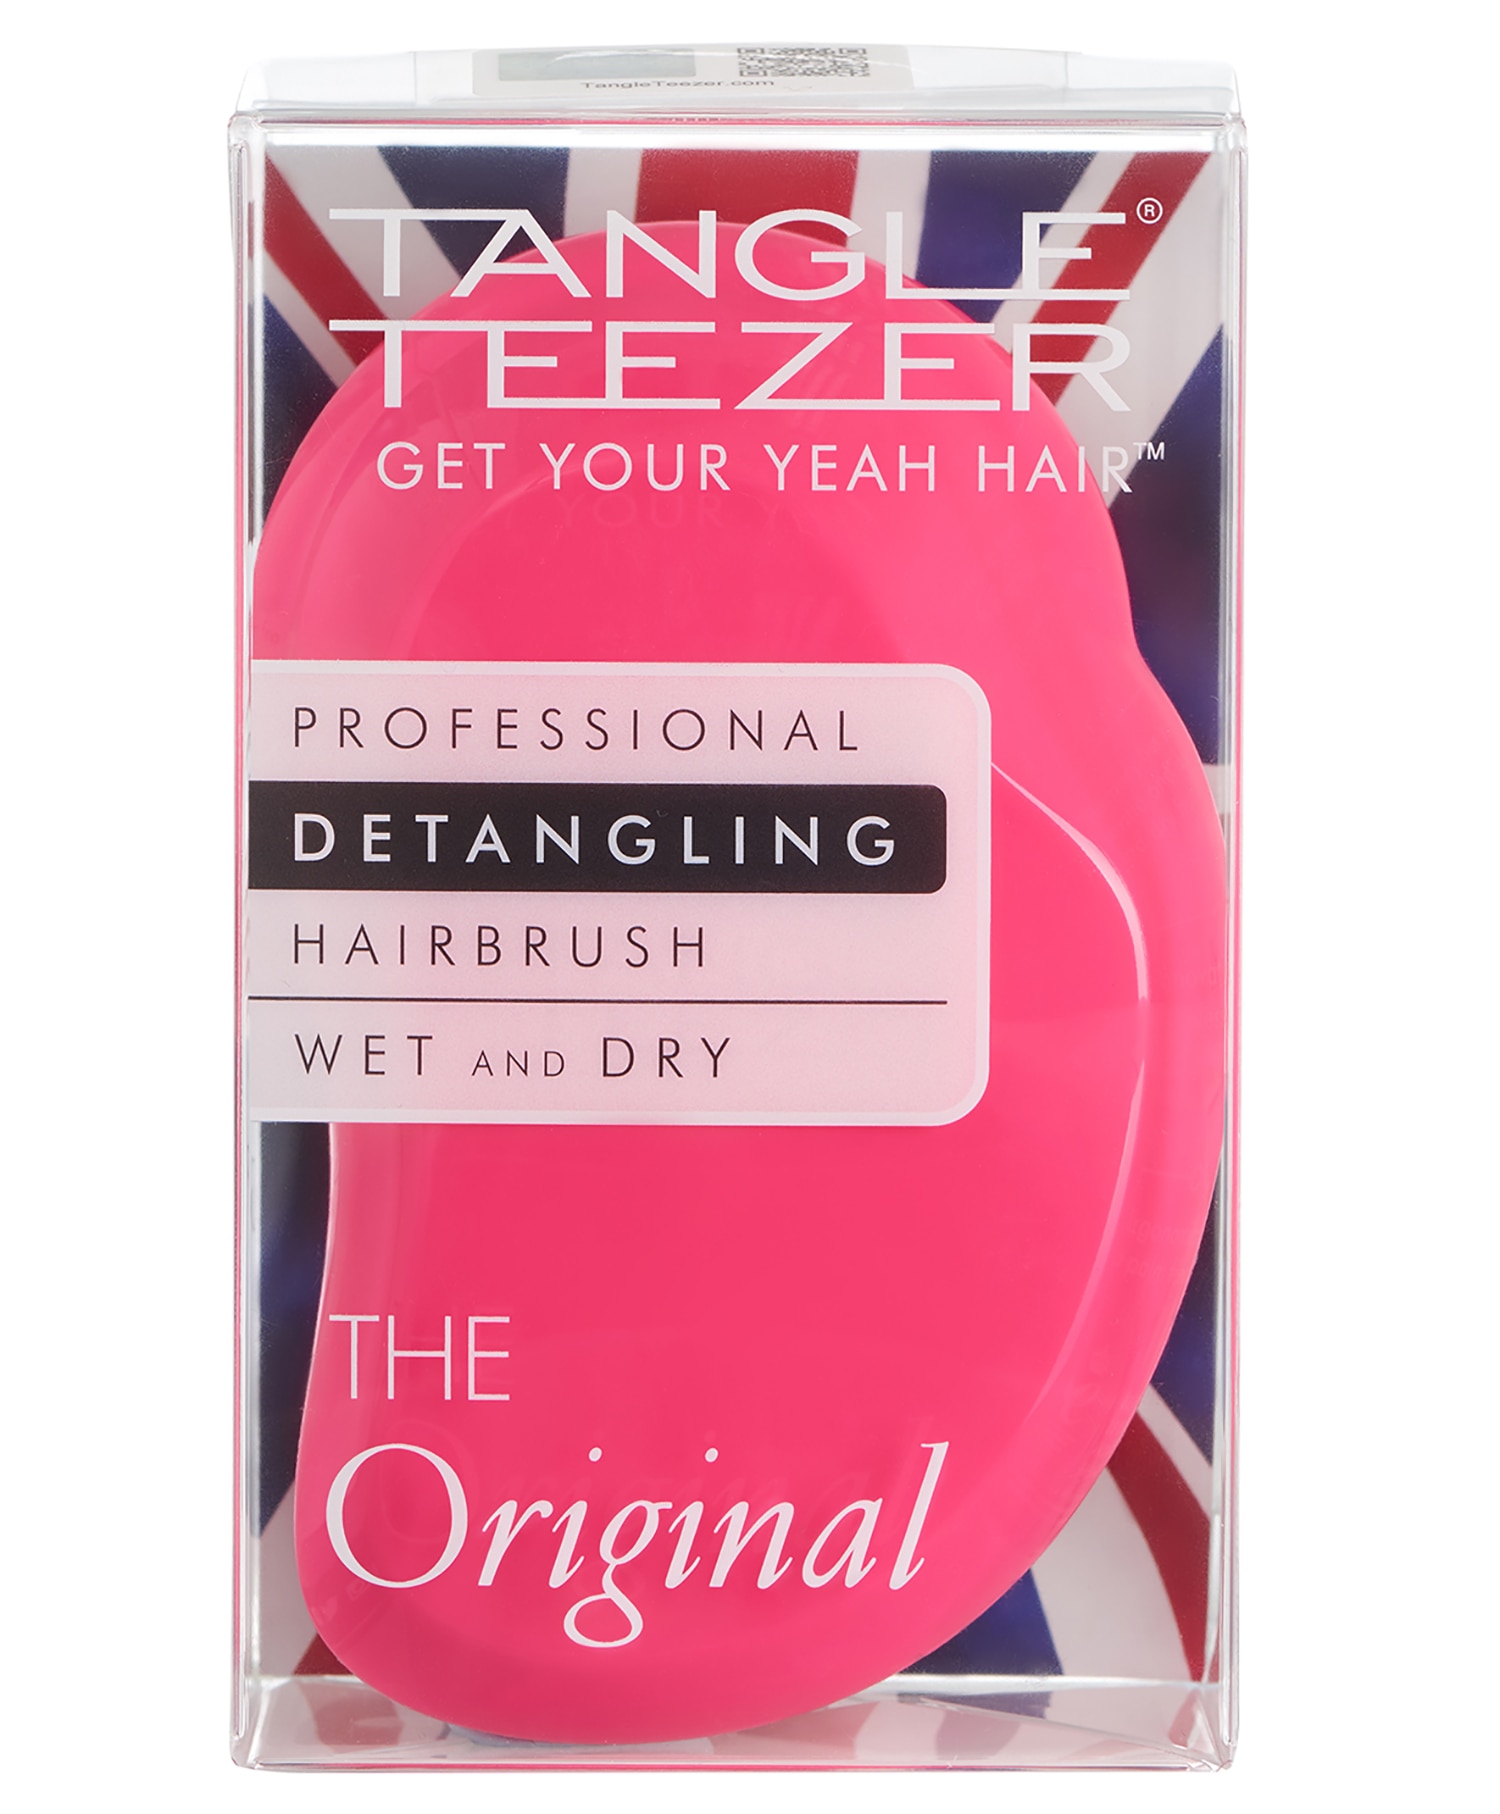 Tangle Teezer Original